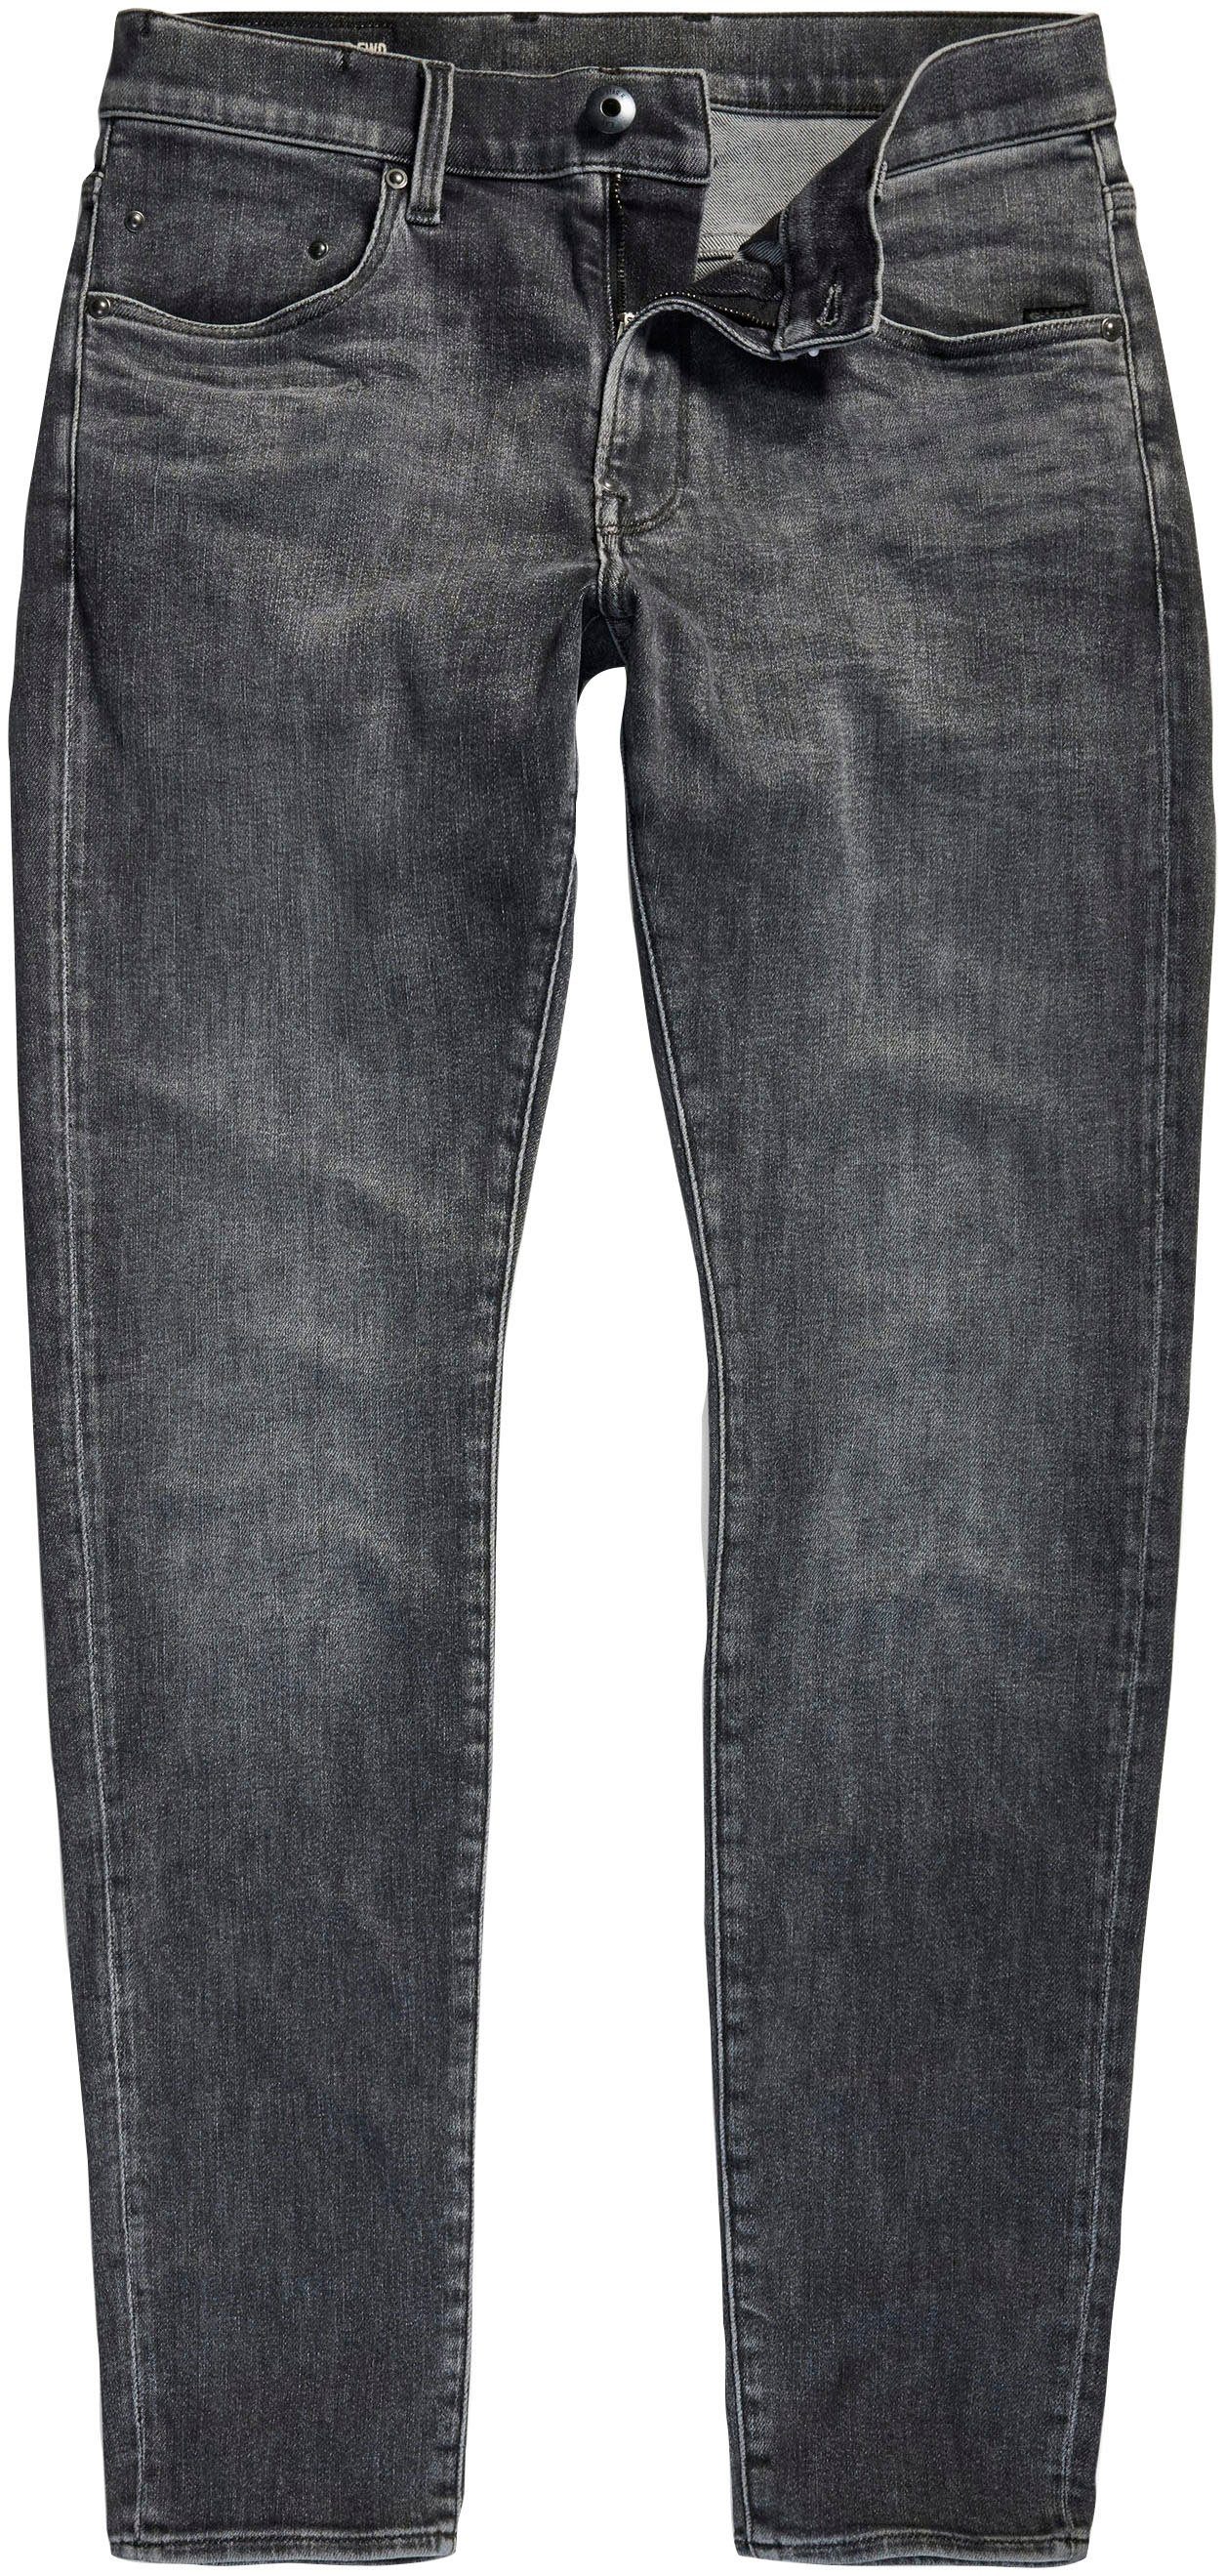 G-Star RAW Revend skinny jeans faded odyssey grey